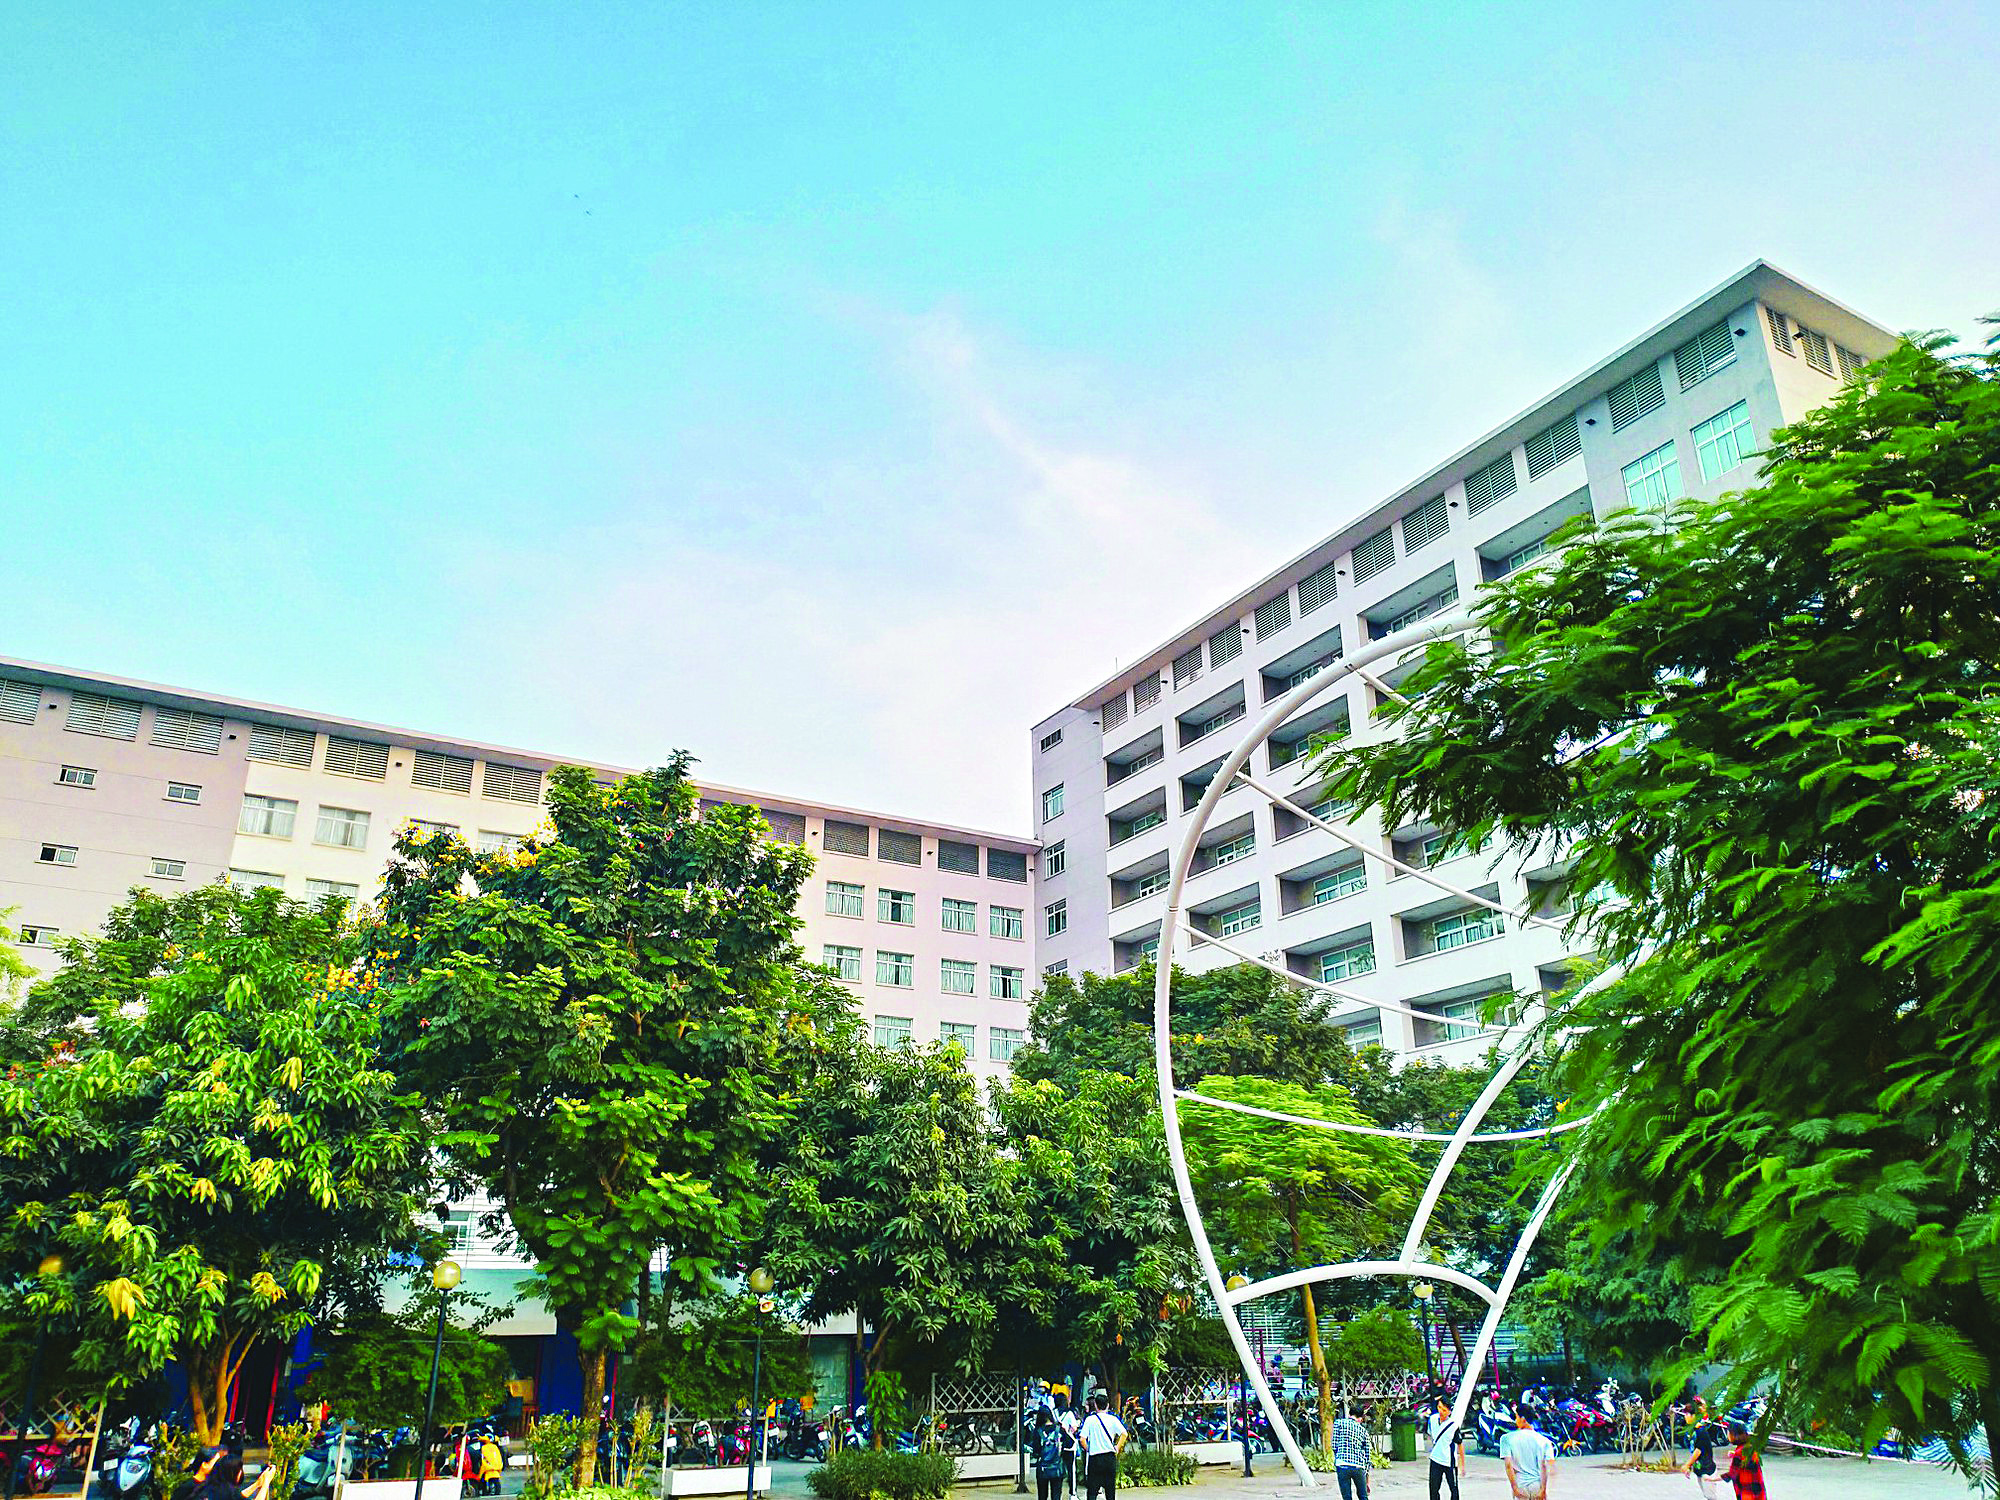 Đại học Thăng Long gồm hai tòa nhà cao 8 và 10 tầng. Ảnh: tin247.com